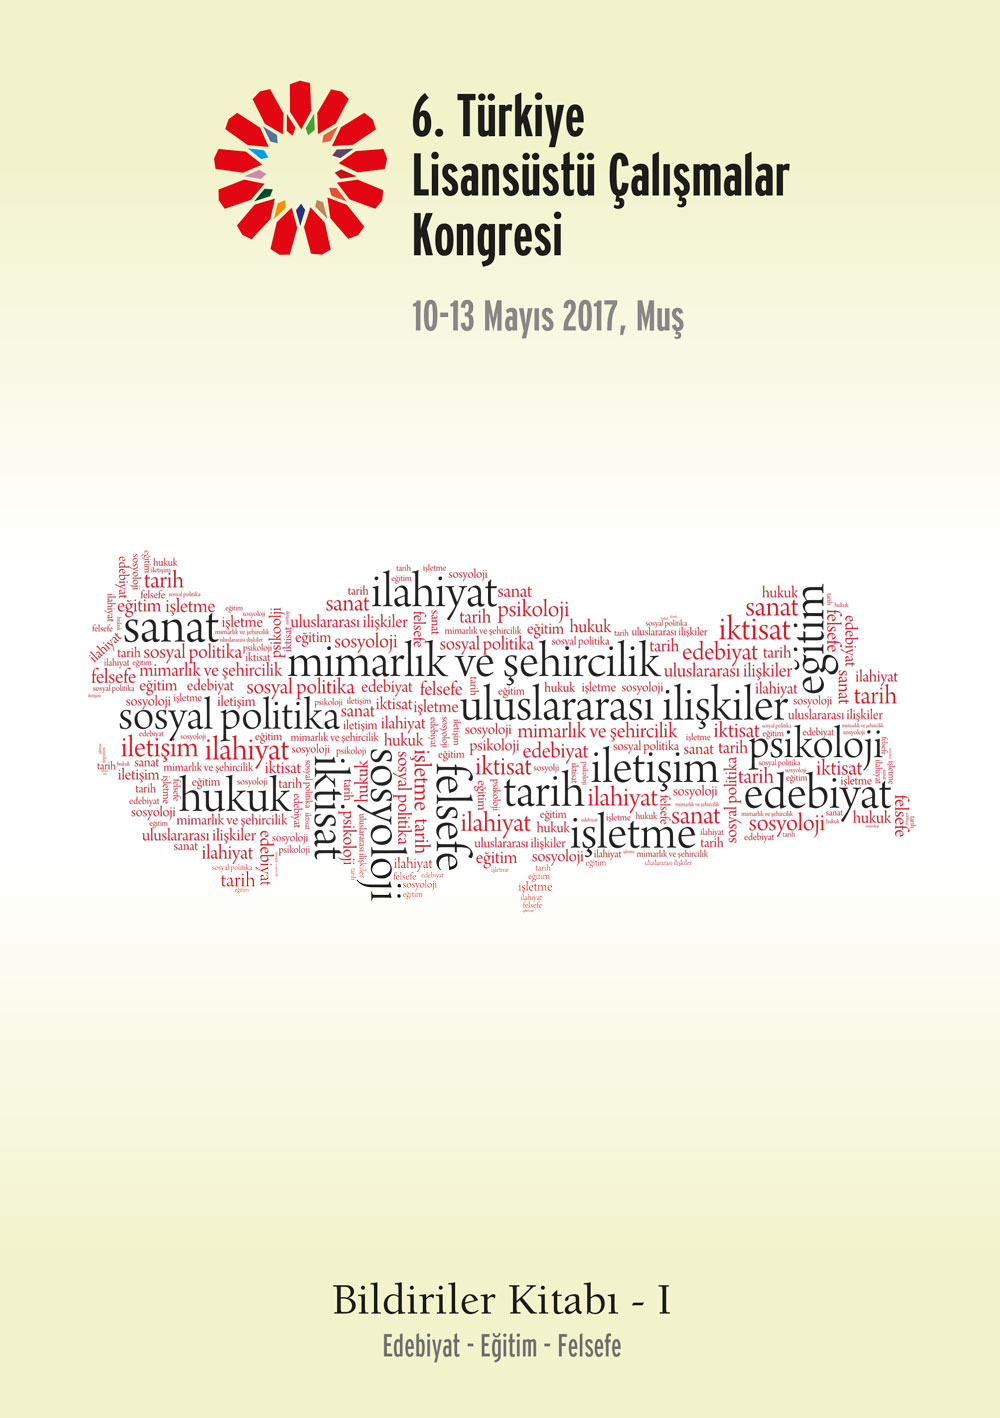 6. Türkiye Lisansüstü Çalışmalar Kongresi Bildiriler Kitabı